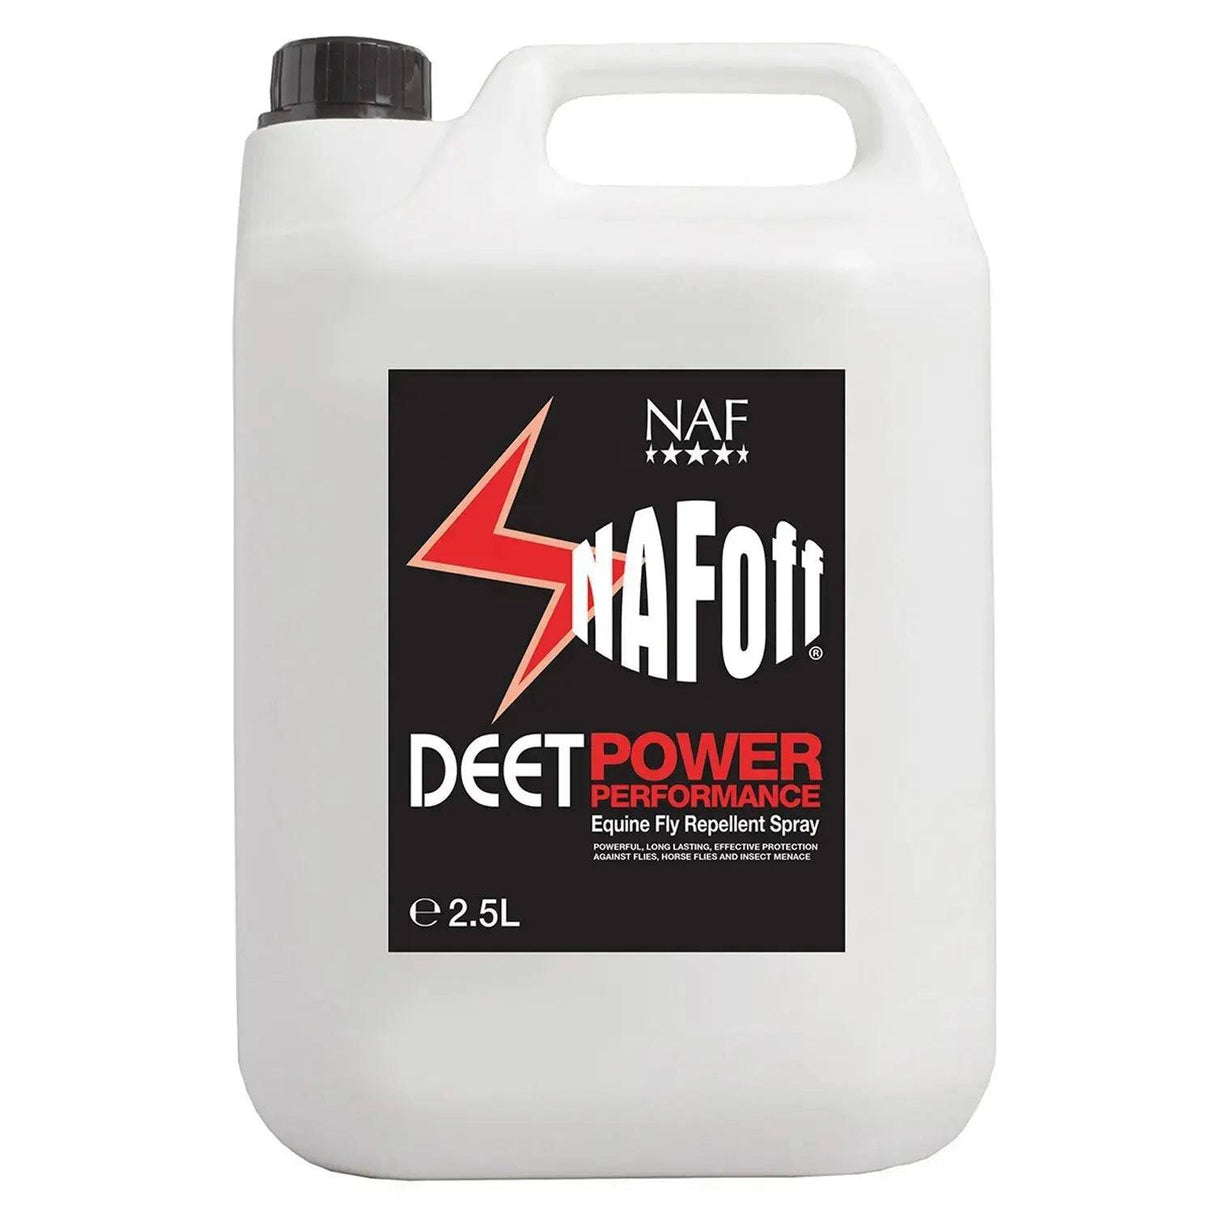 NAF Off Deet Power Performance Insect Repellents 2.5 Lt Refill Barnstaple Equestrian Supplies